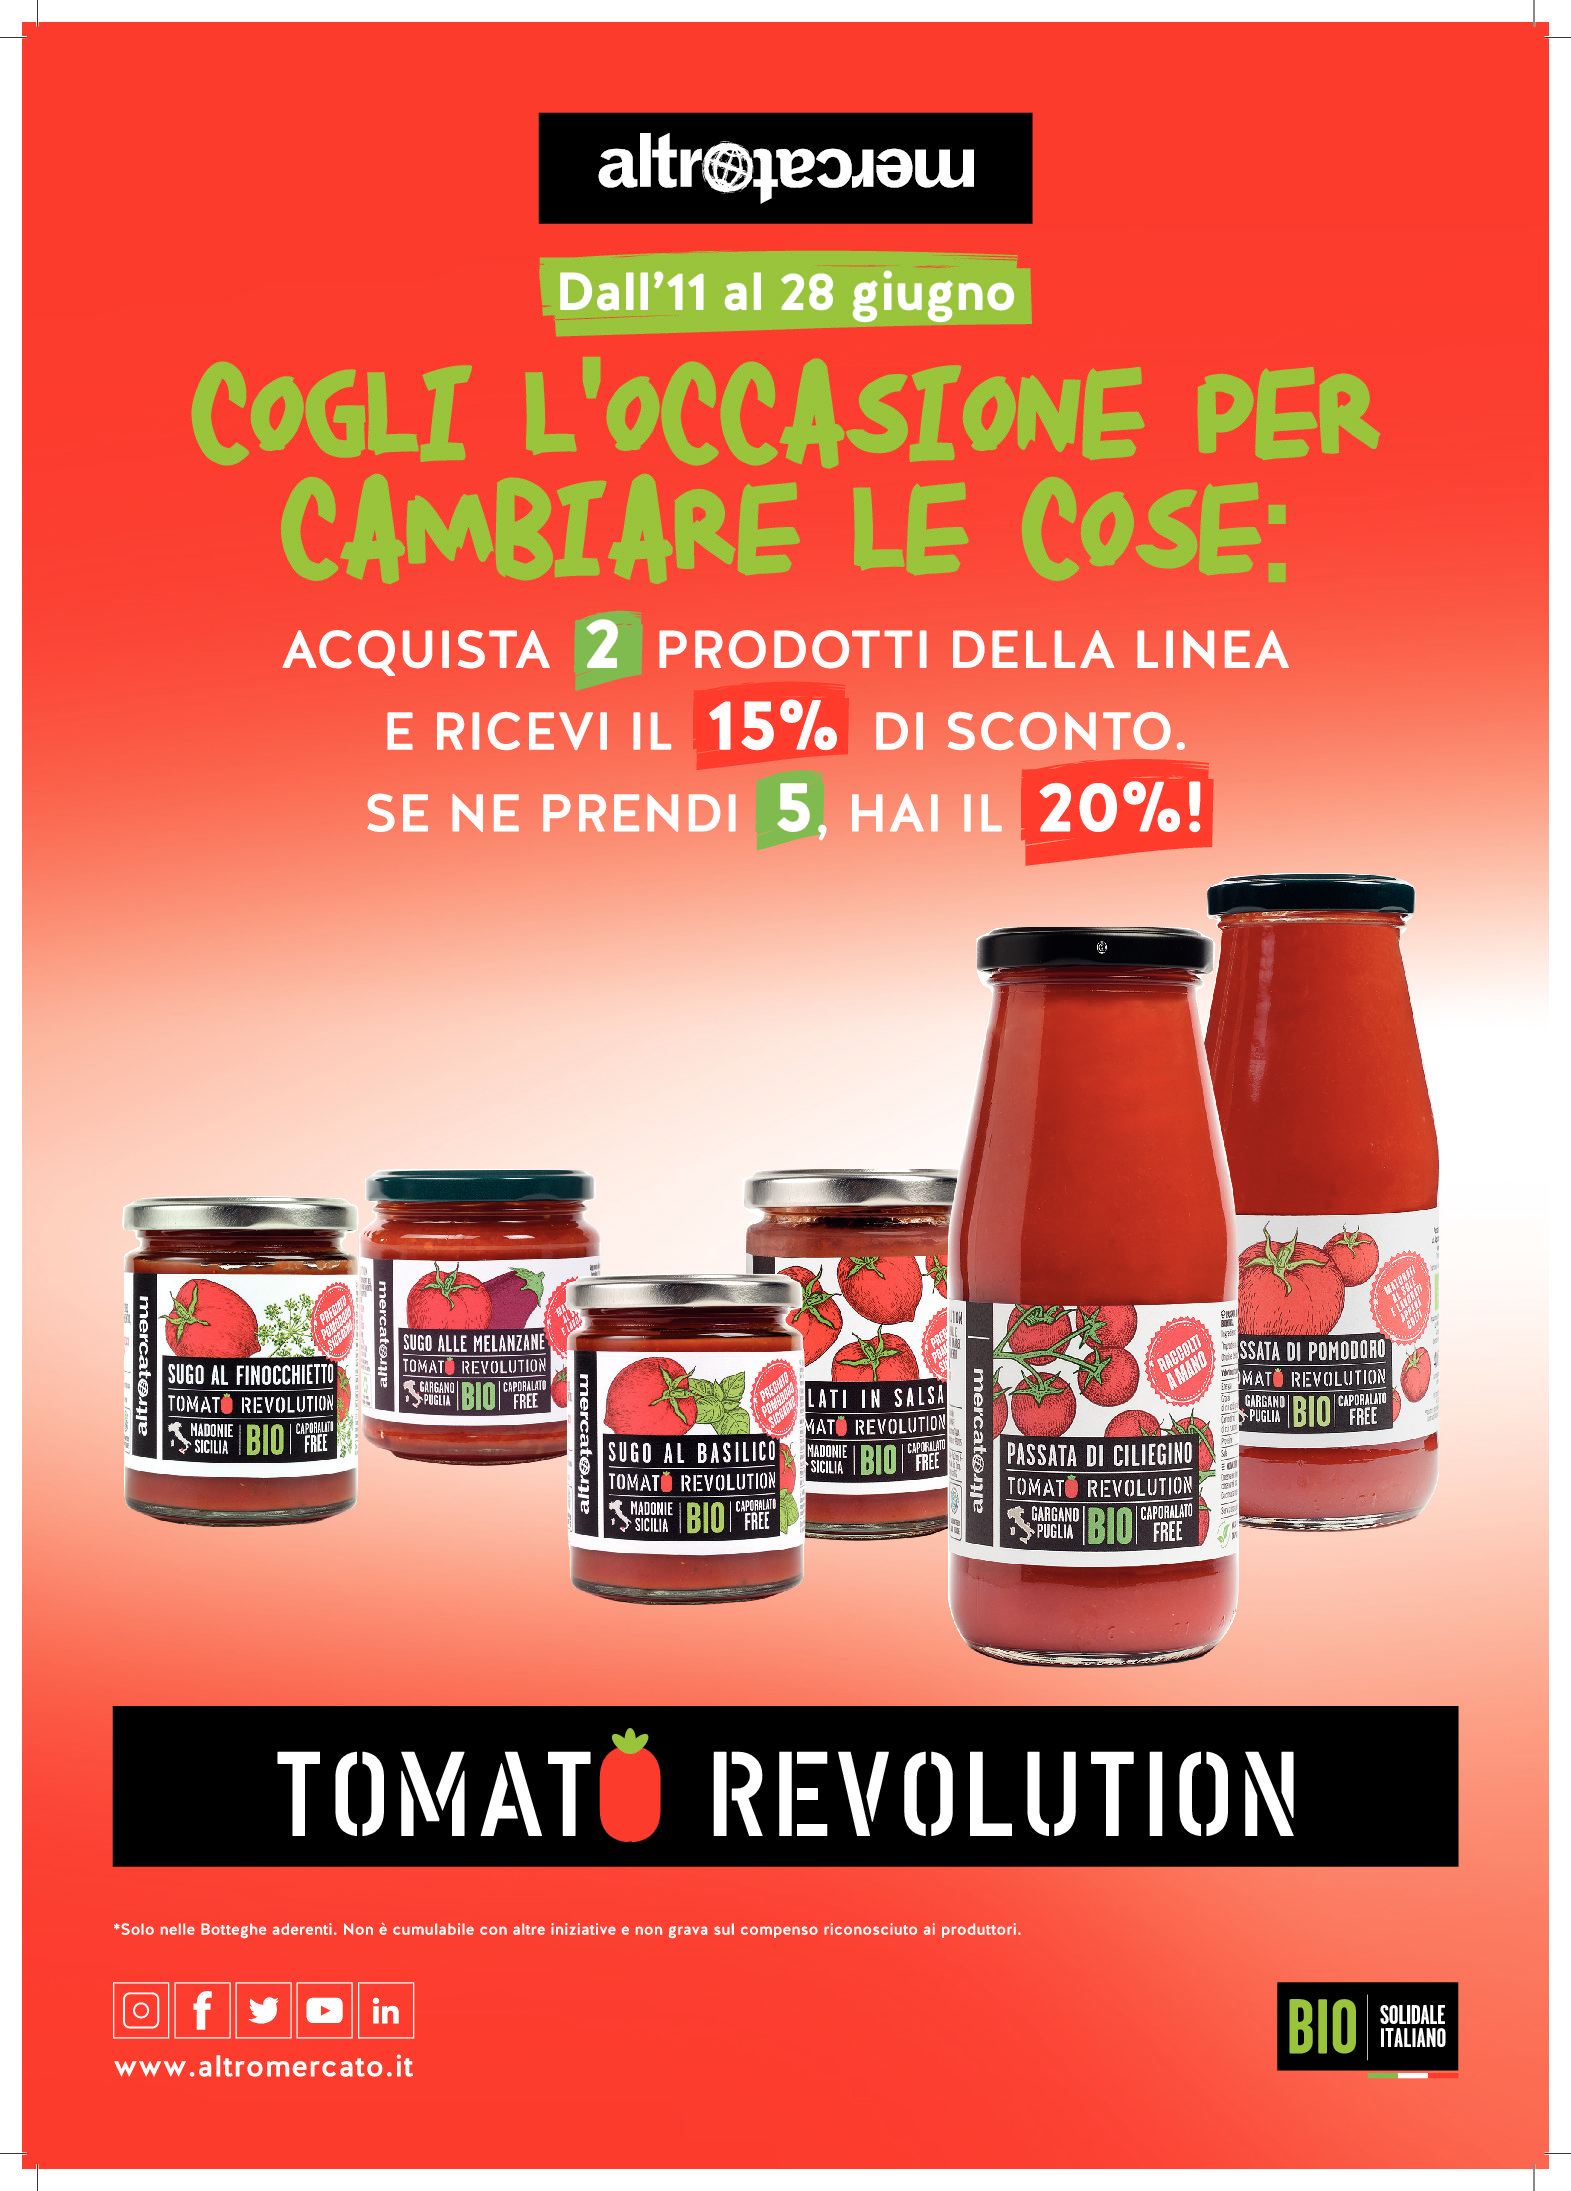 La rivoluzione rossa: la filiera del pomodoro caporalato free!